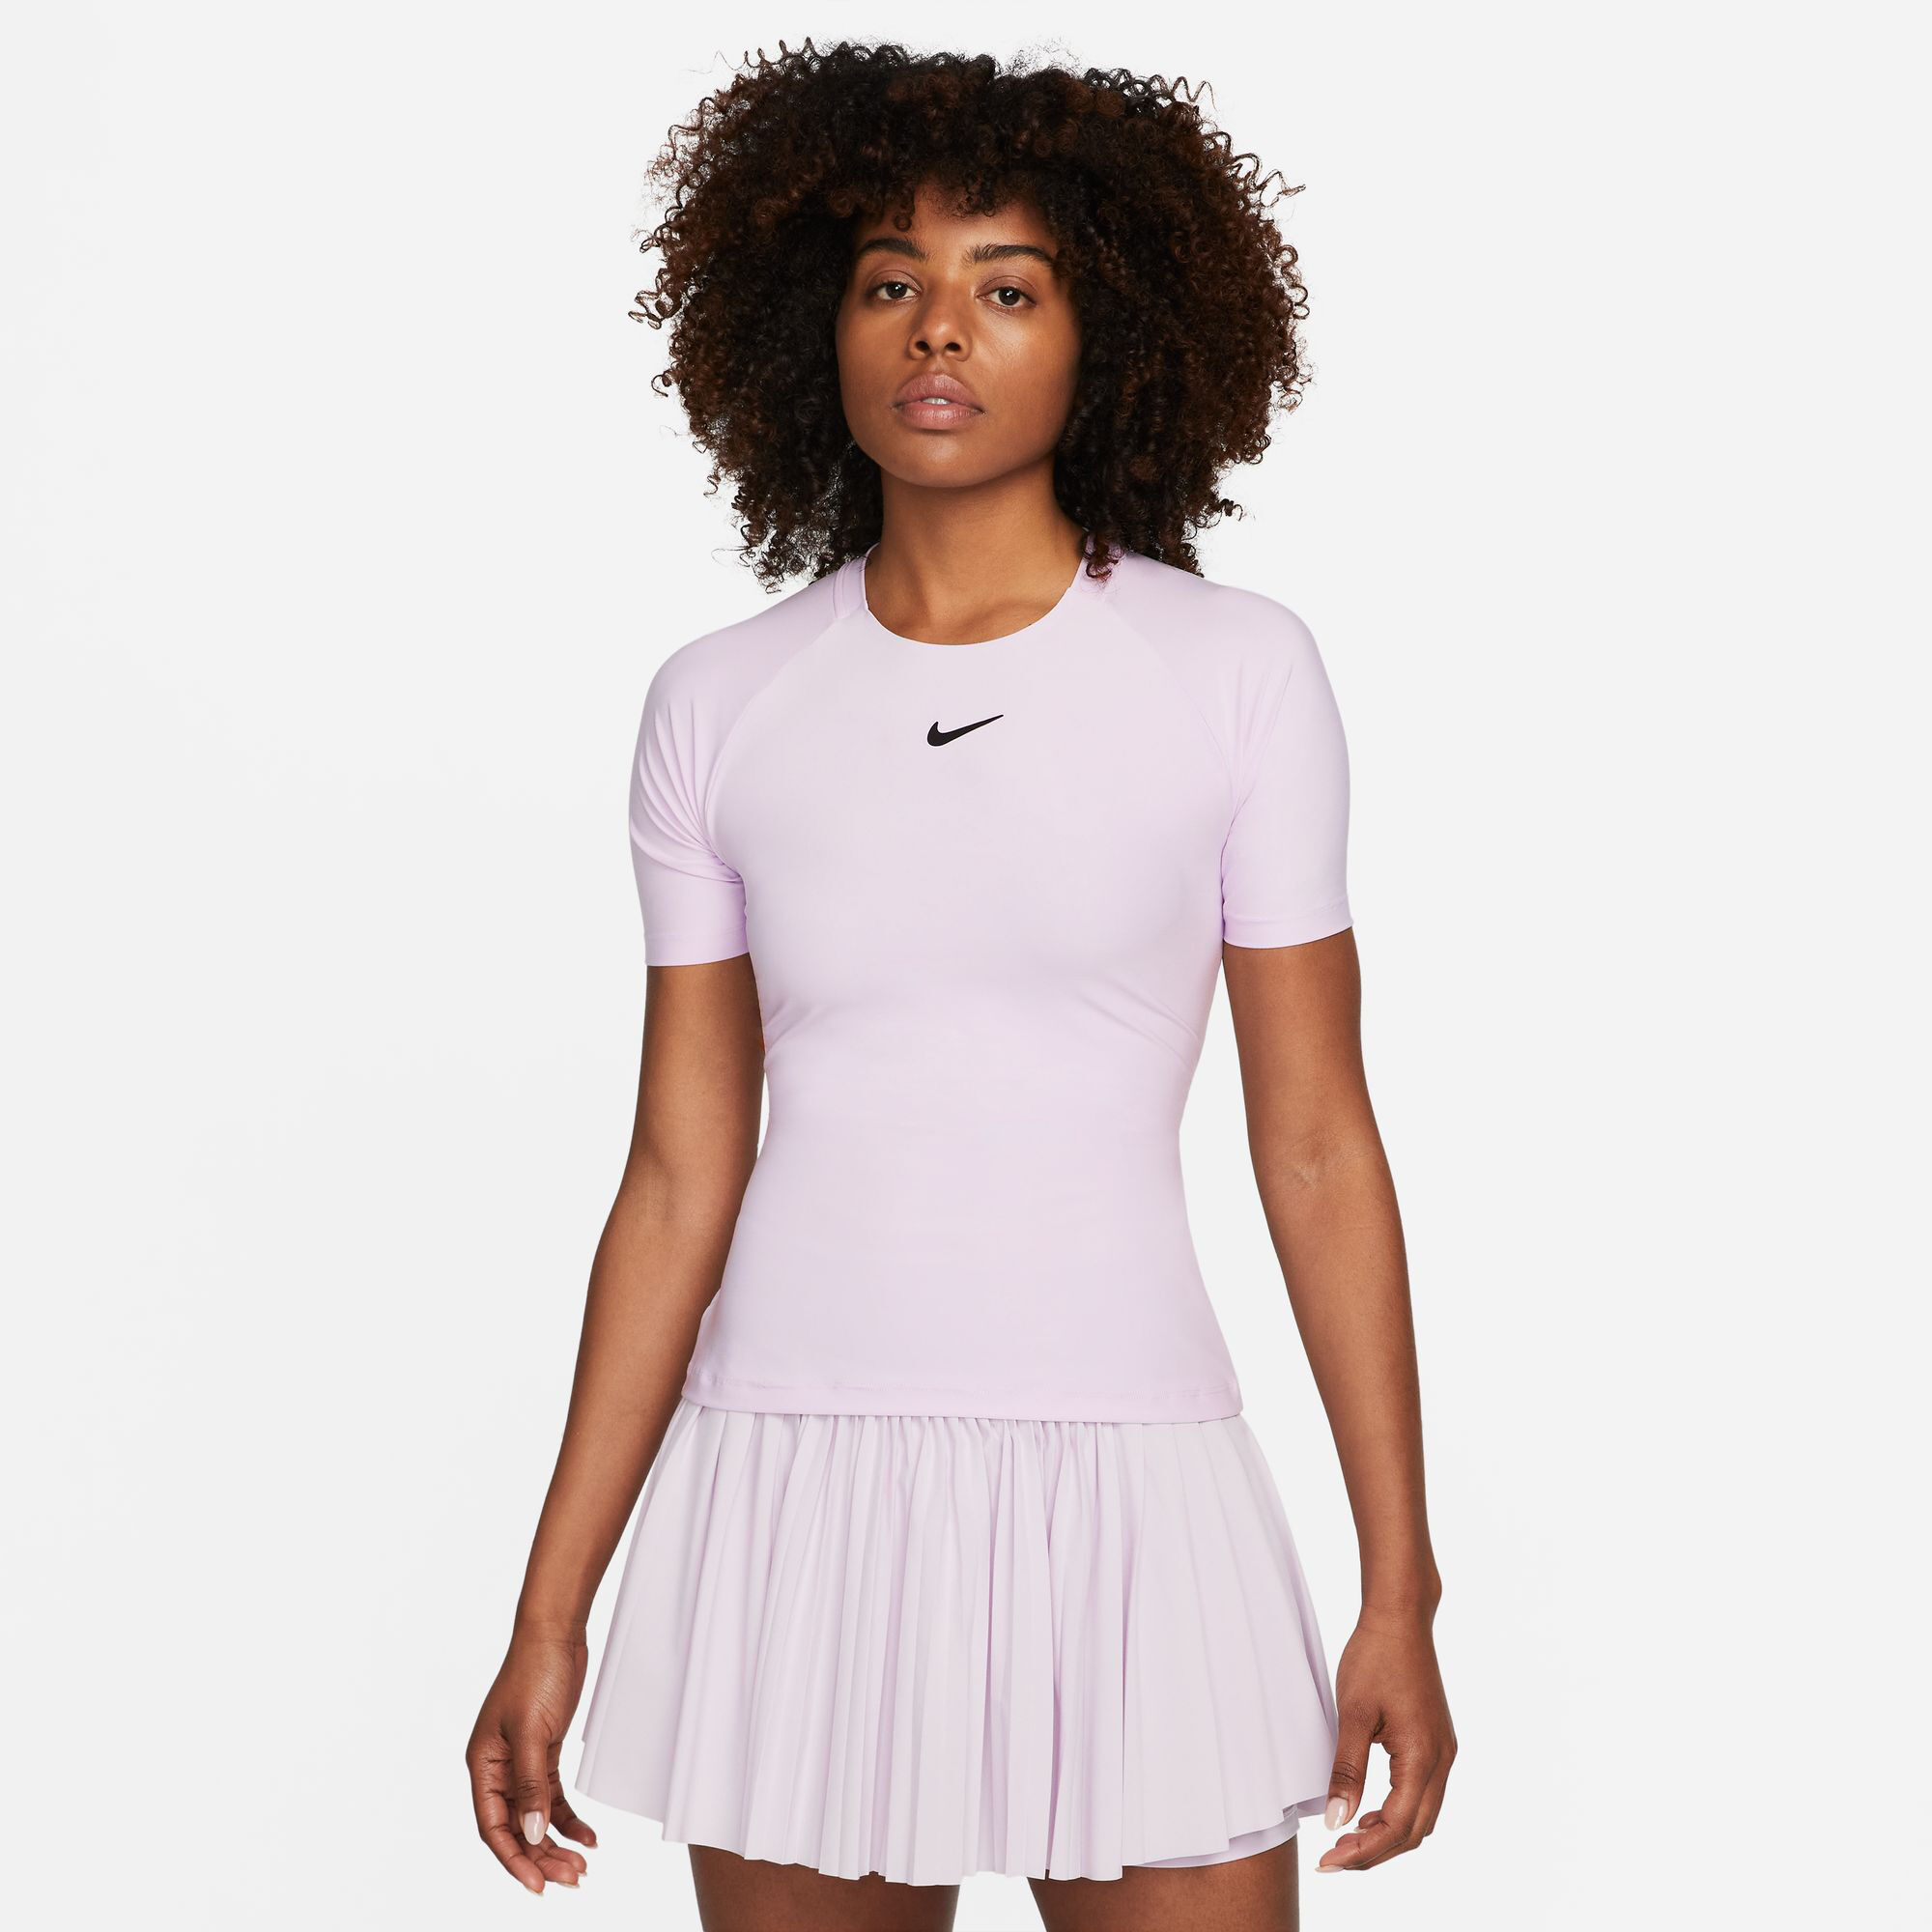 Buy Nike Court Advantage Dri-Fit 6M T-Shirt Women Violet online